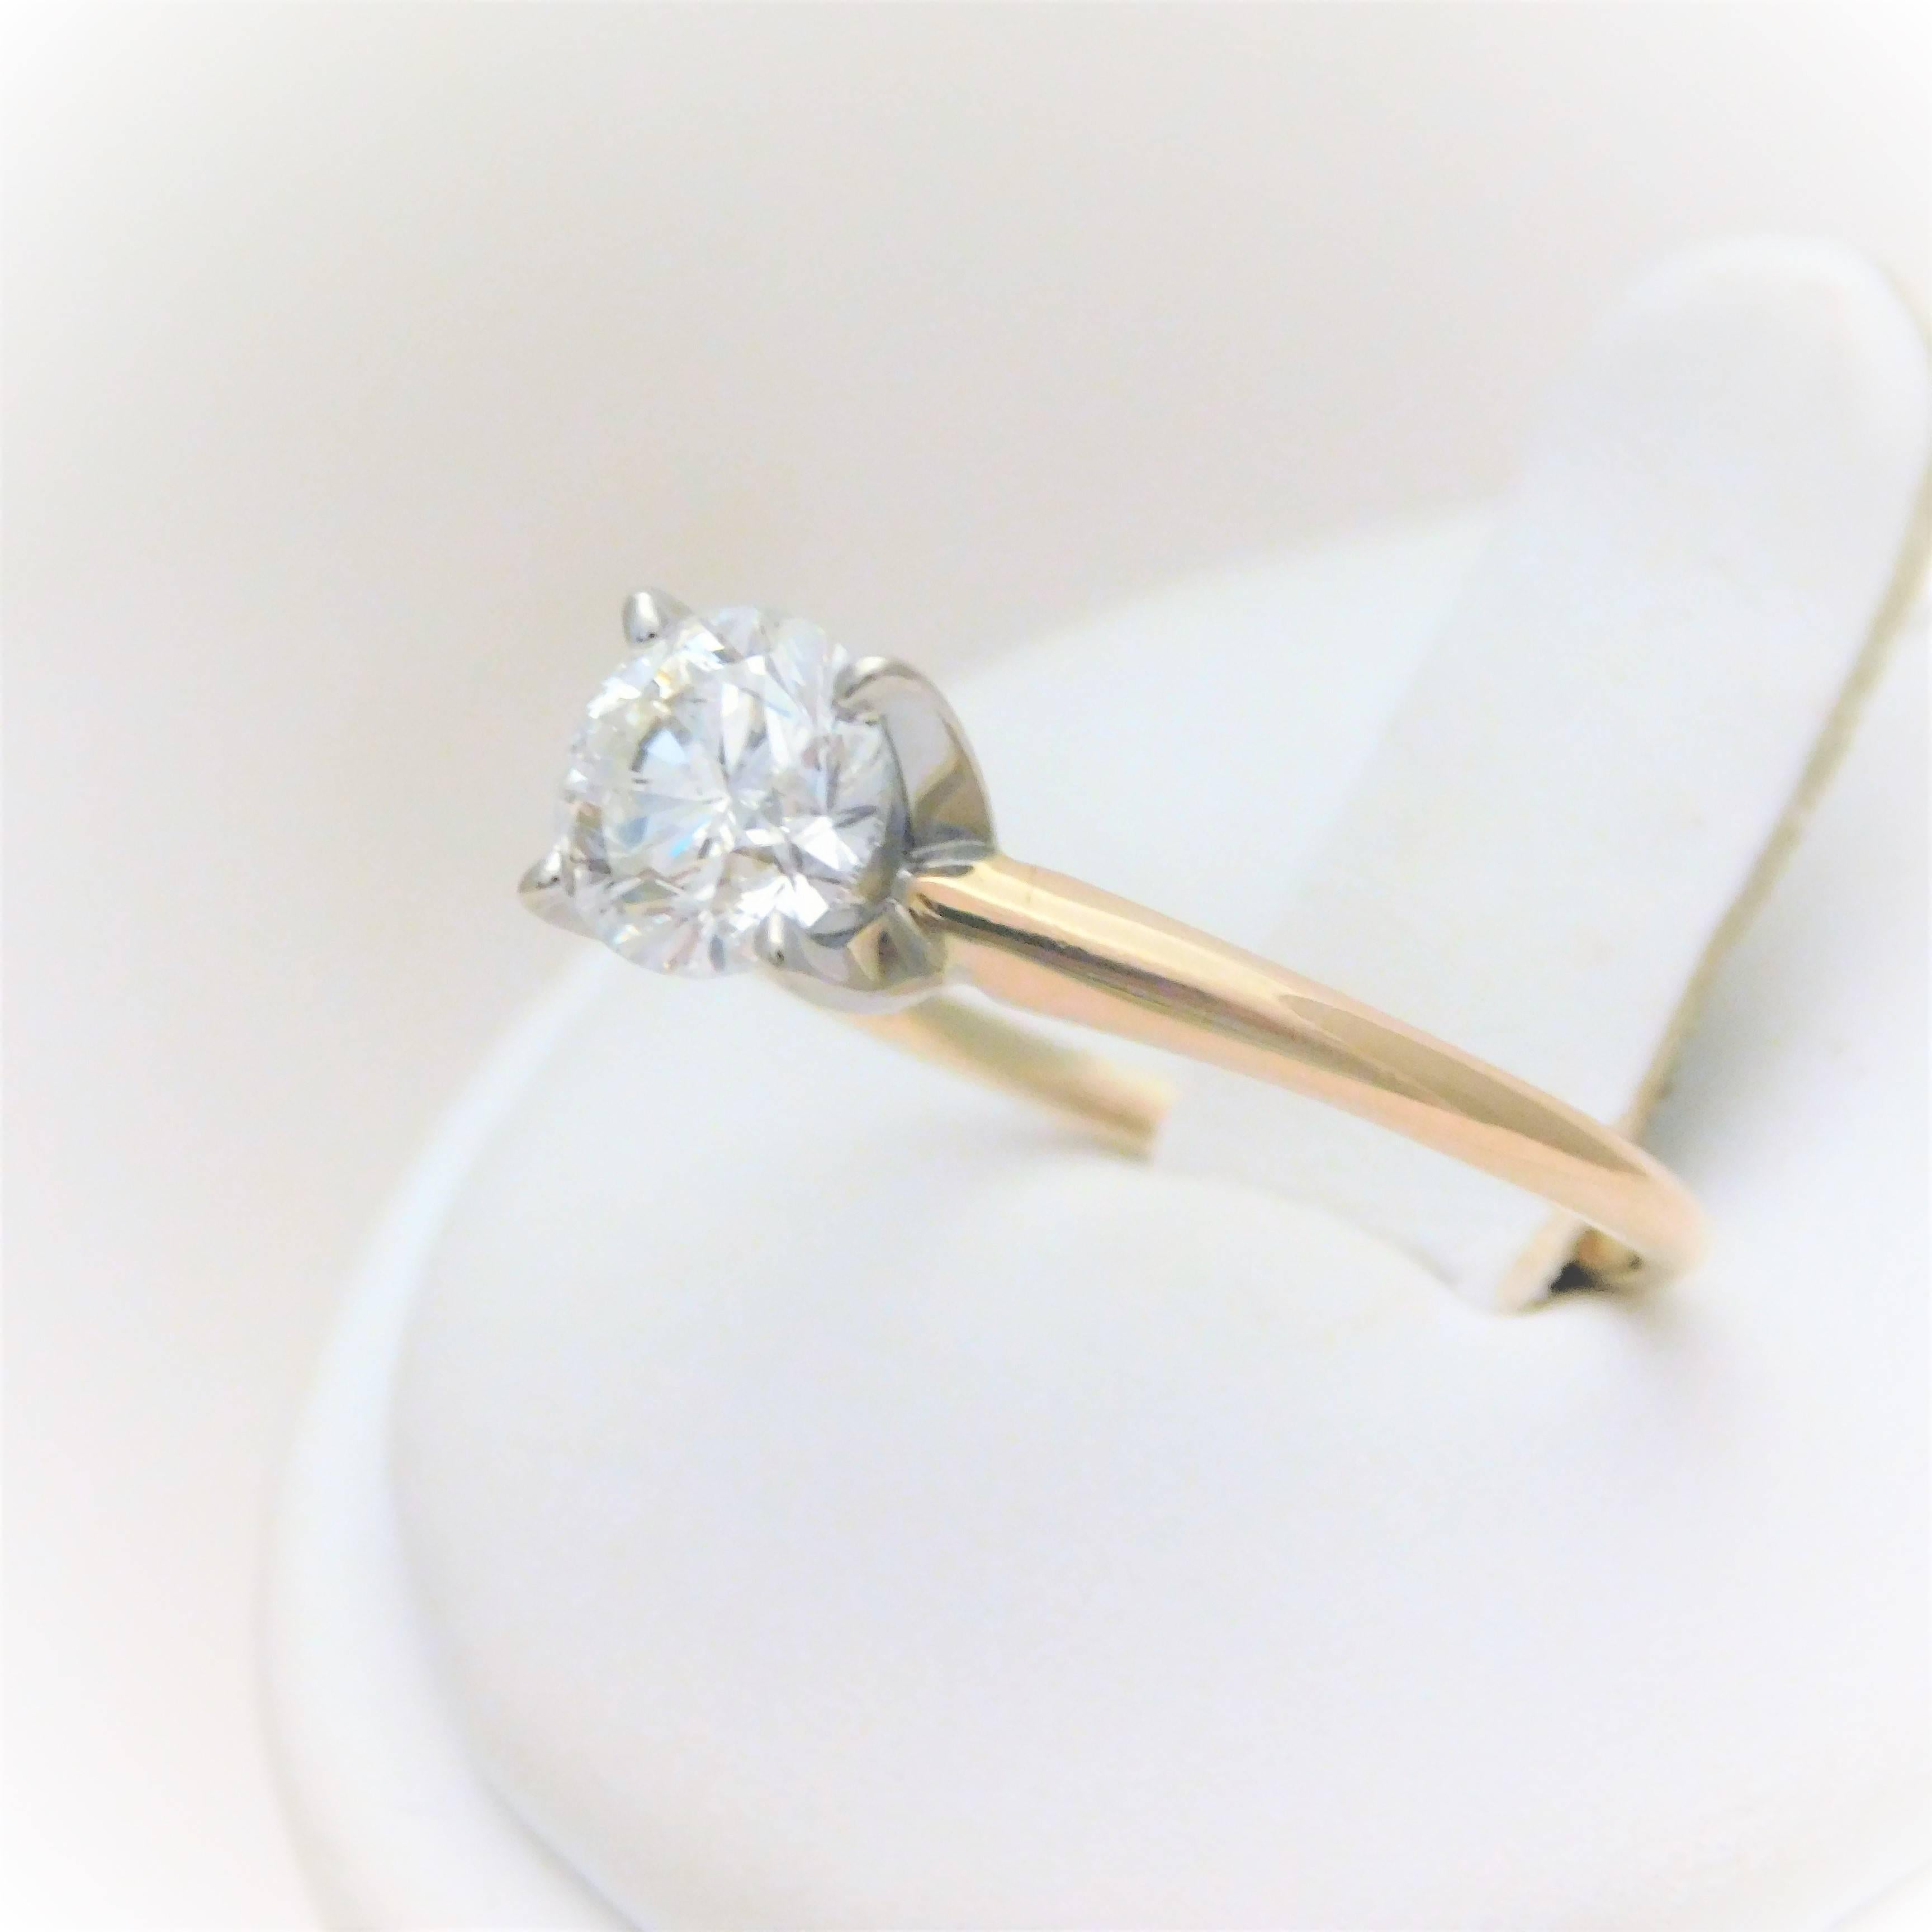 1.23 carat diamond ring price